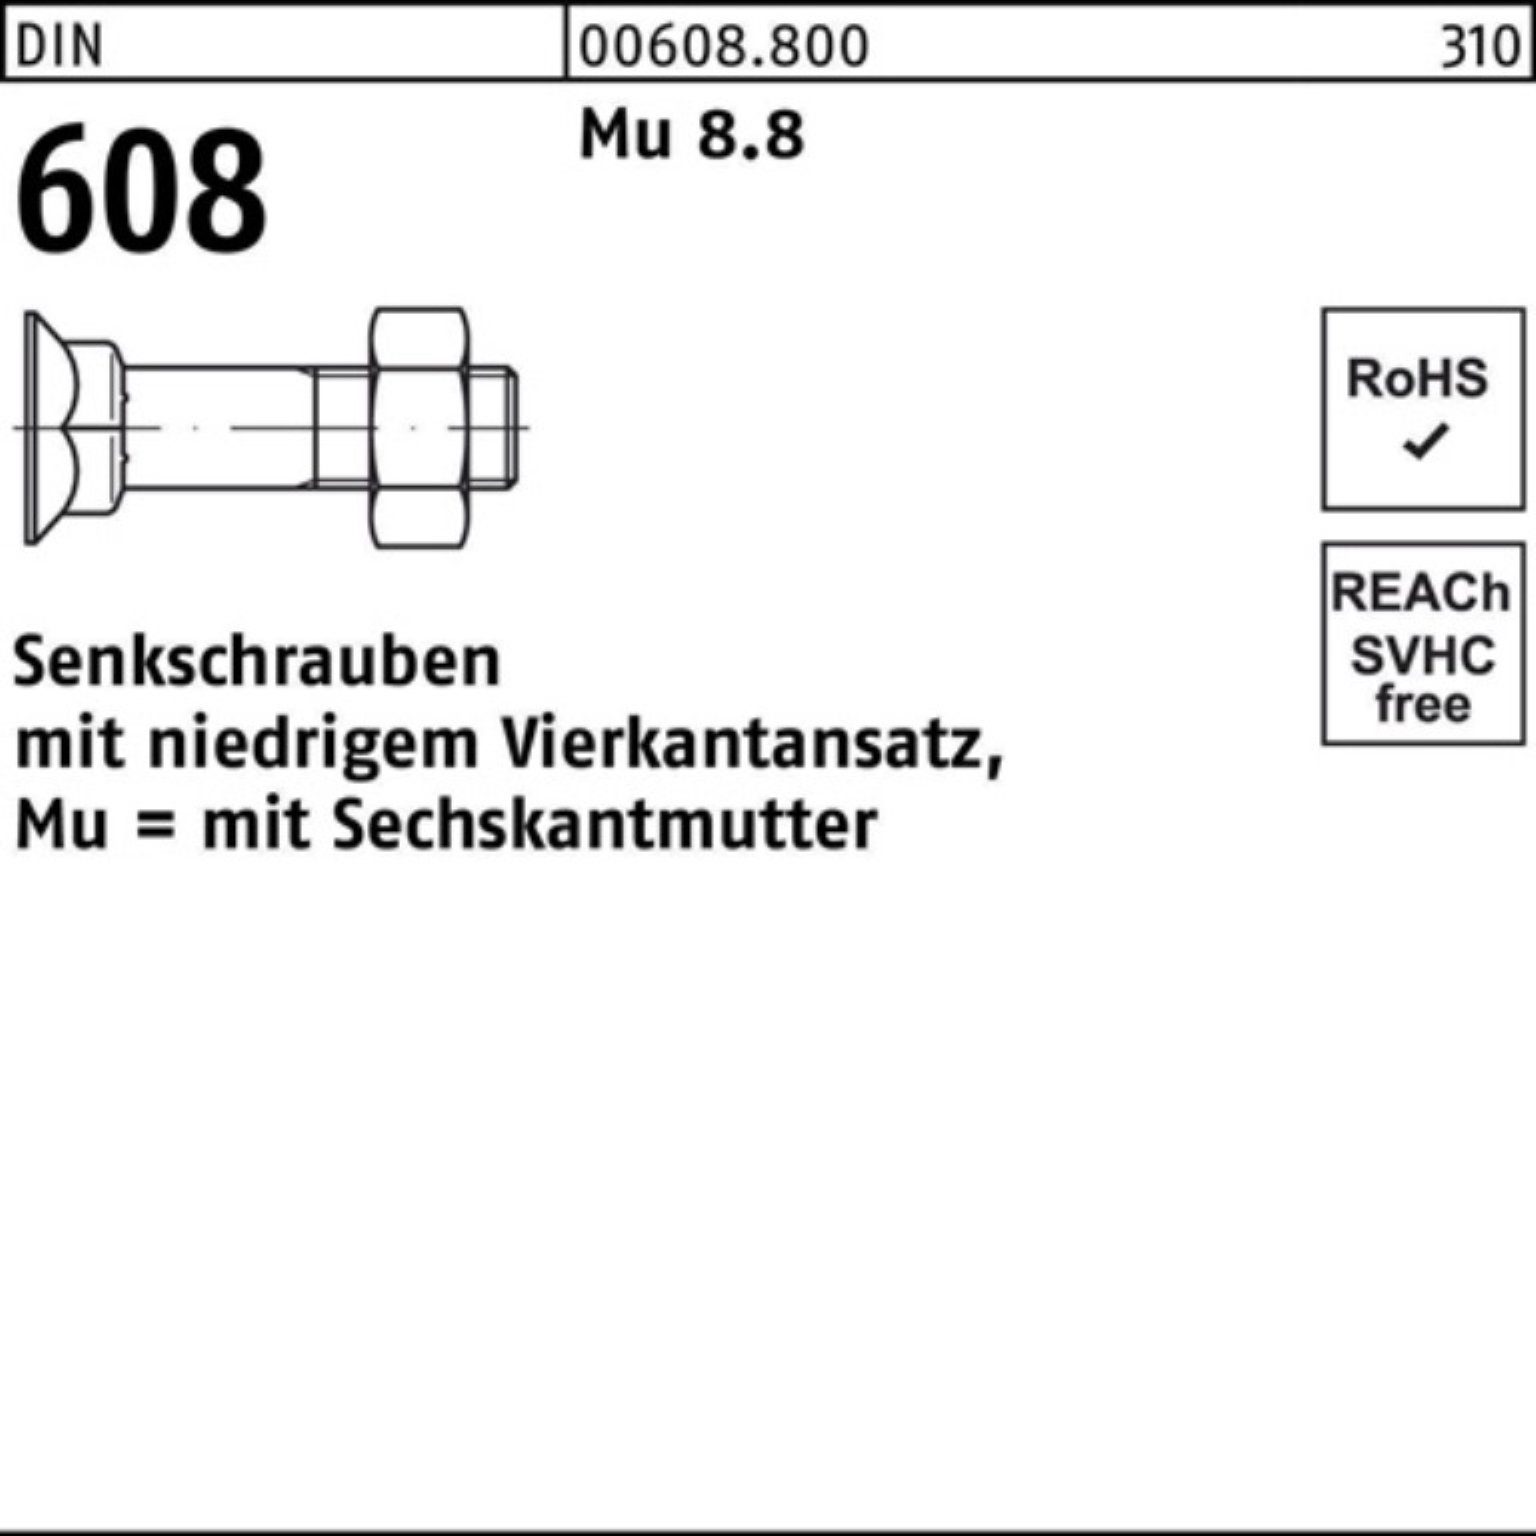 Reyher Senkschraube 200er 8.8 Mu Pack Senkschraube DIN 2 4-ktansatz/6-ktmutter 608 30 M10x